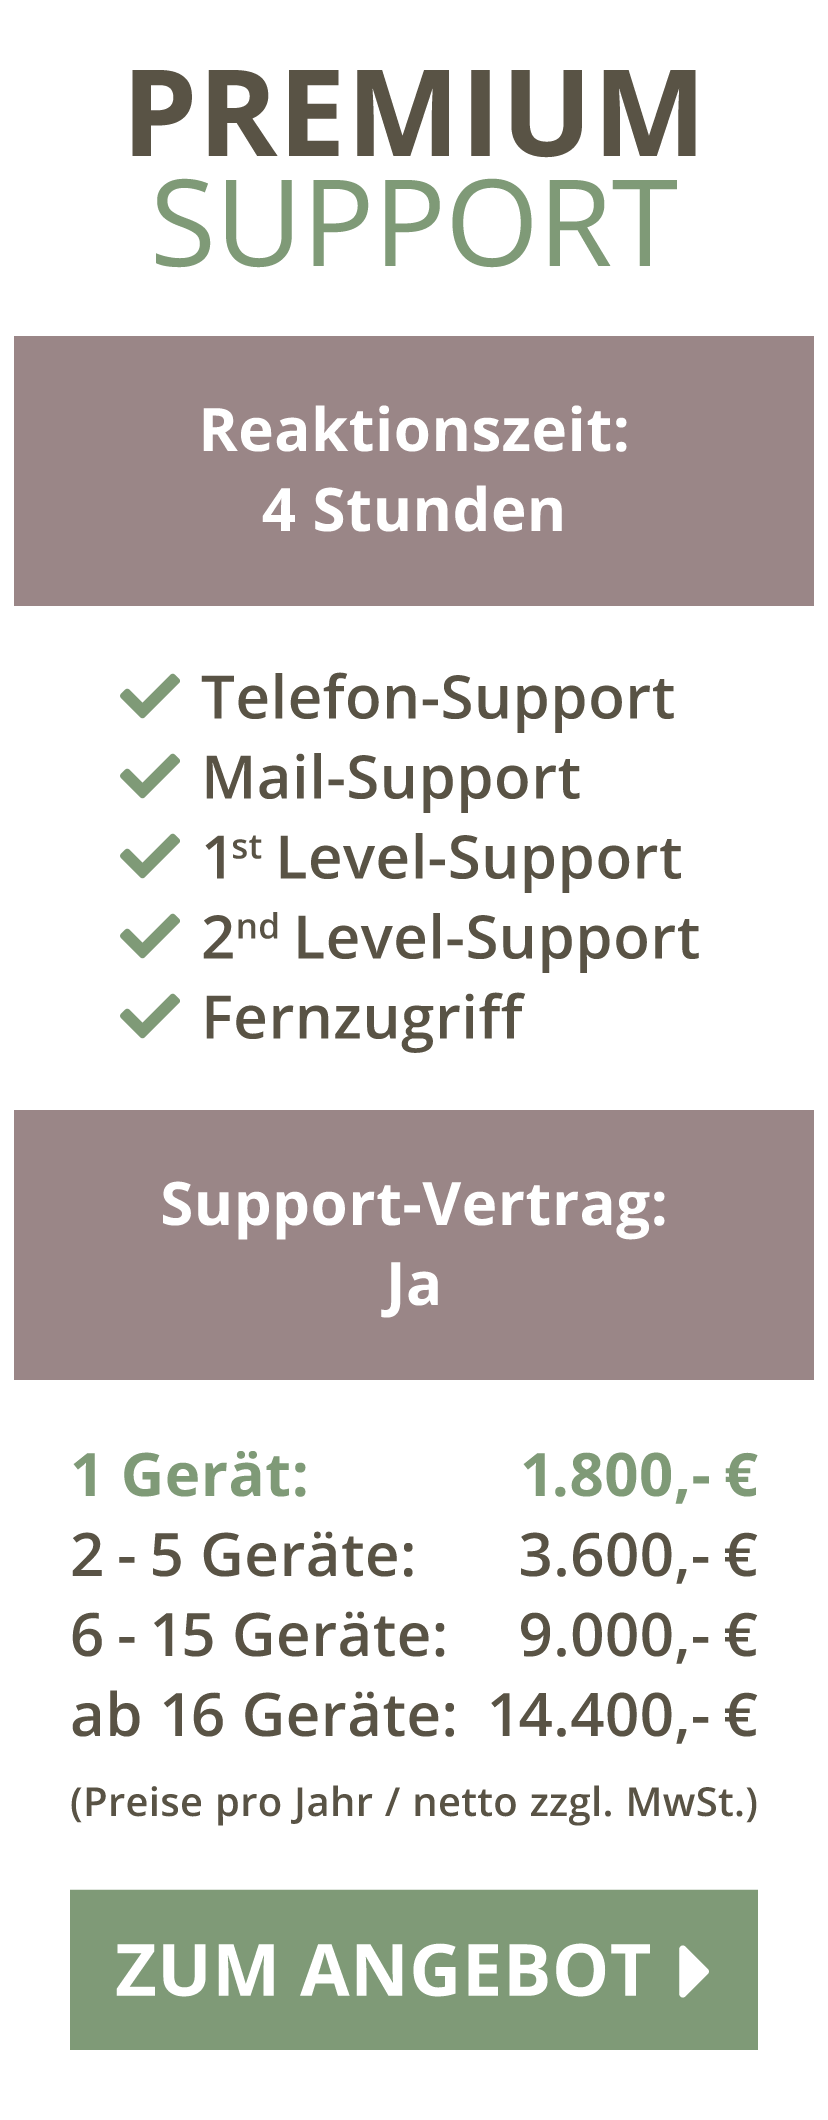 Premium Support | DTC | München